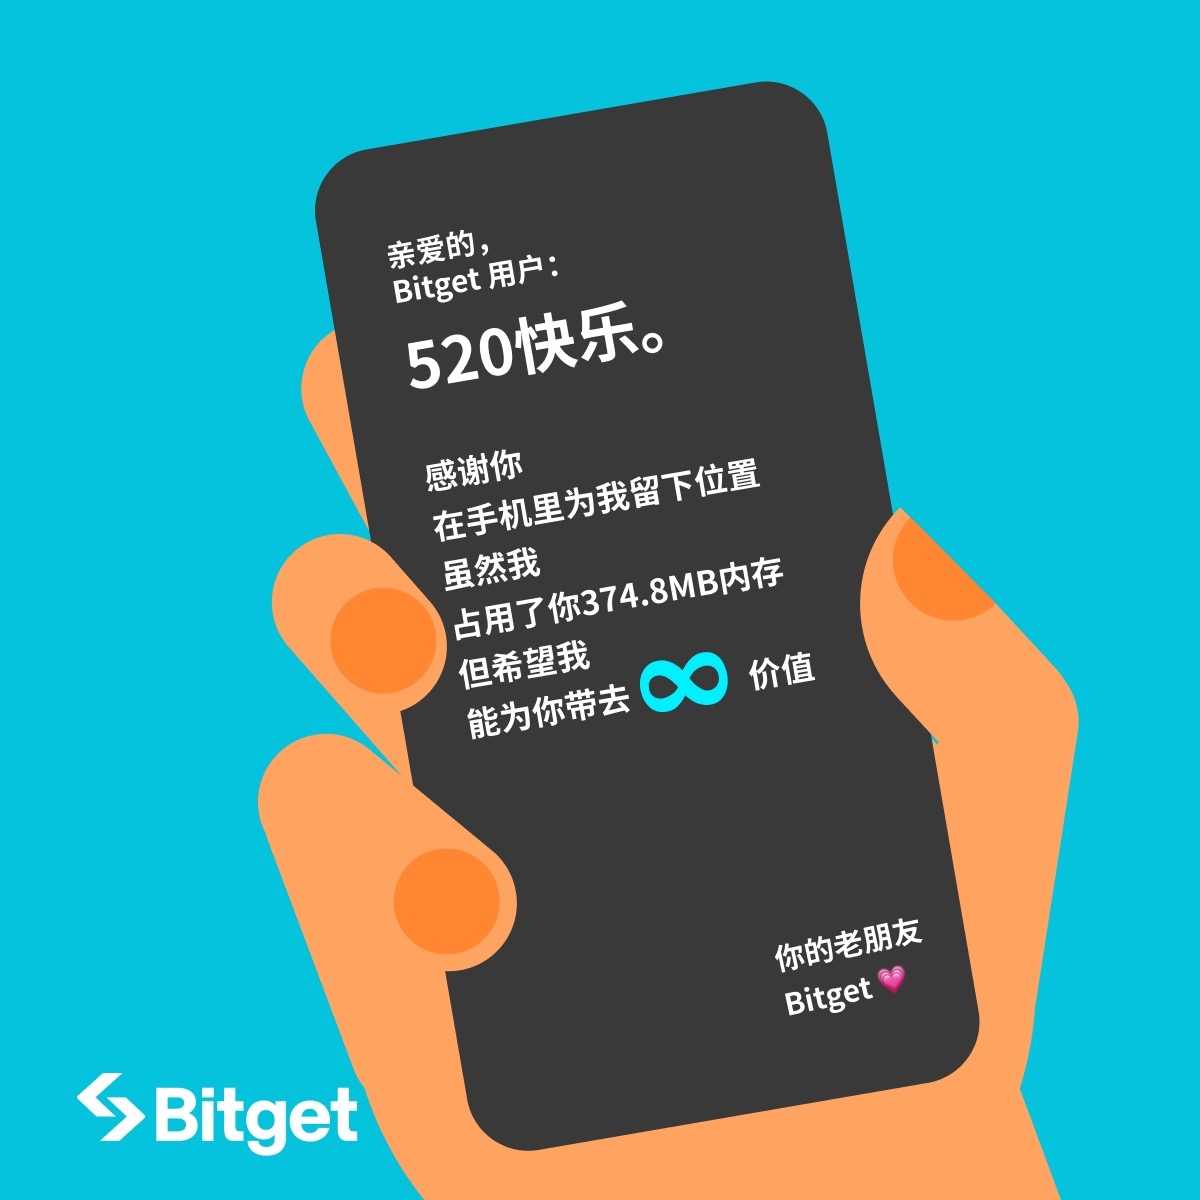 亲爱的Bitget用户： #520快乐❤️ 感谢你在手机里为我留下位置📱 希望我能带给你无限价值📈 爱要大胆说出来😆留下你对 #Bitget 的表白，抽3人获得Bitget定制周边🎉